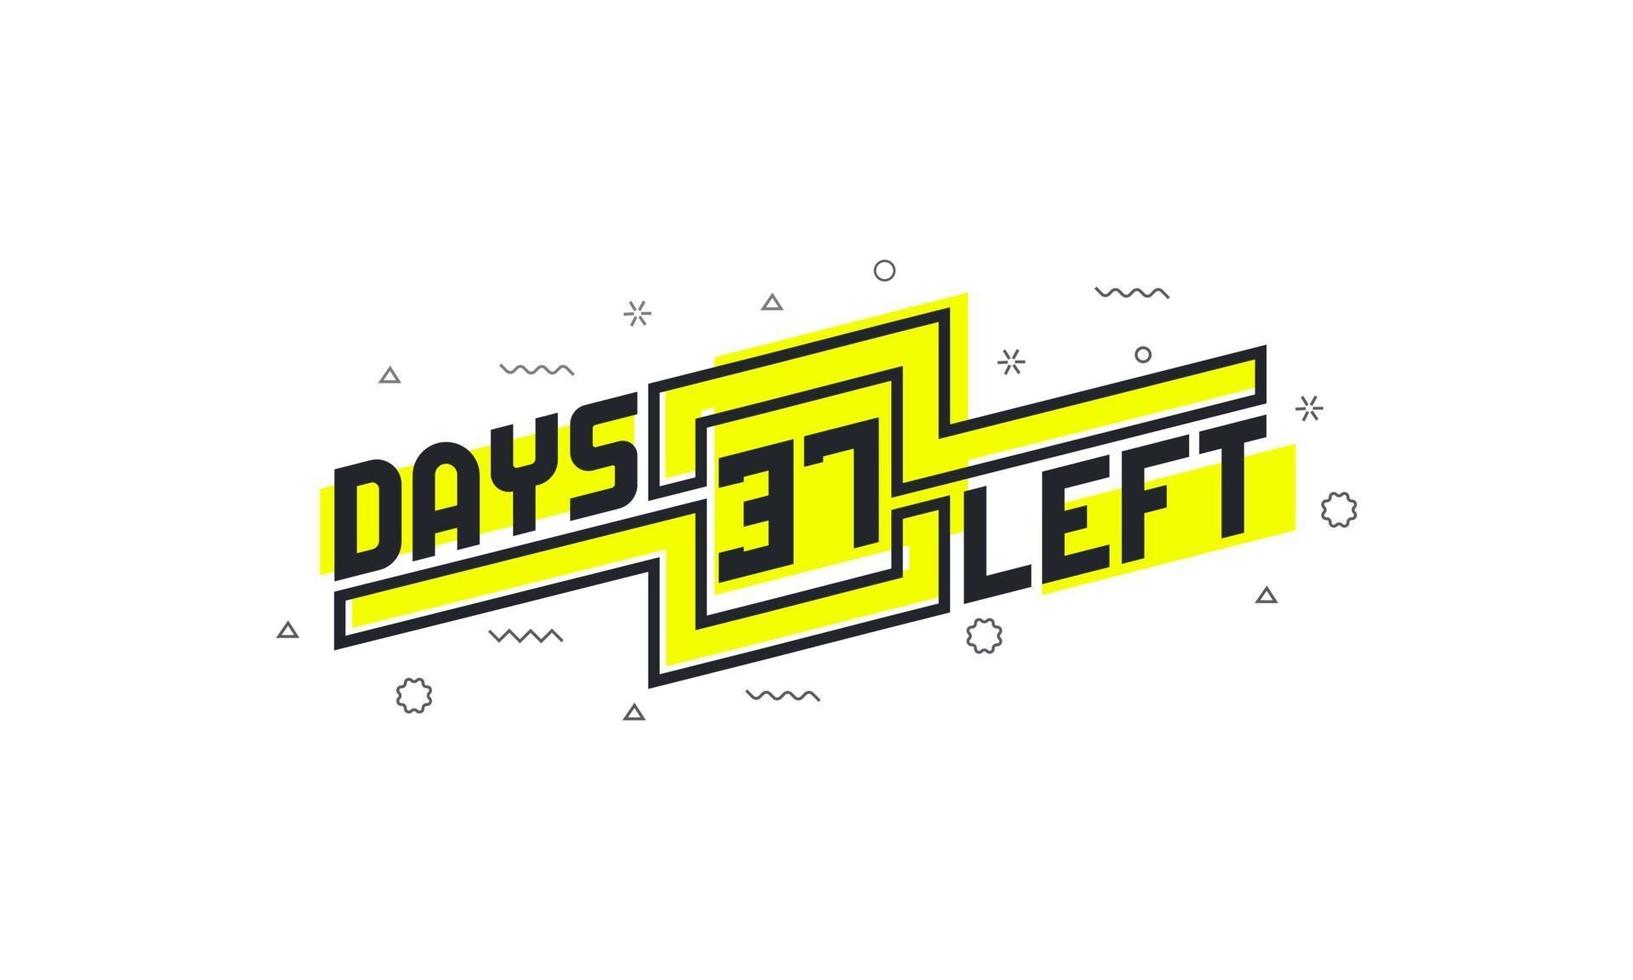 Noch 37 Tage Countdown-Zeichen zum Verkauf oder zur Promotion. vektor